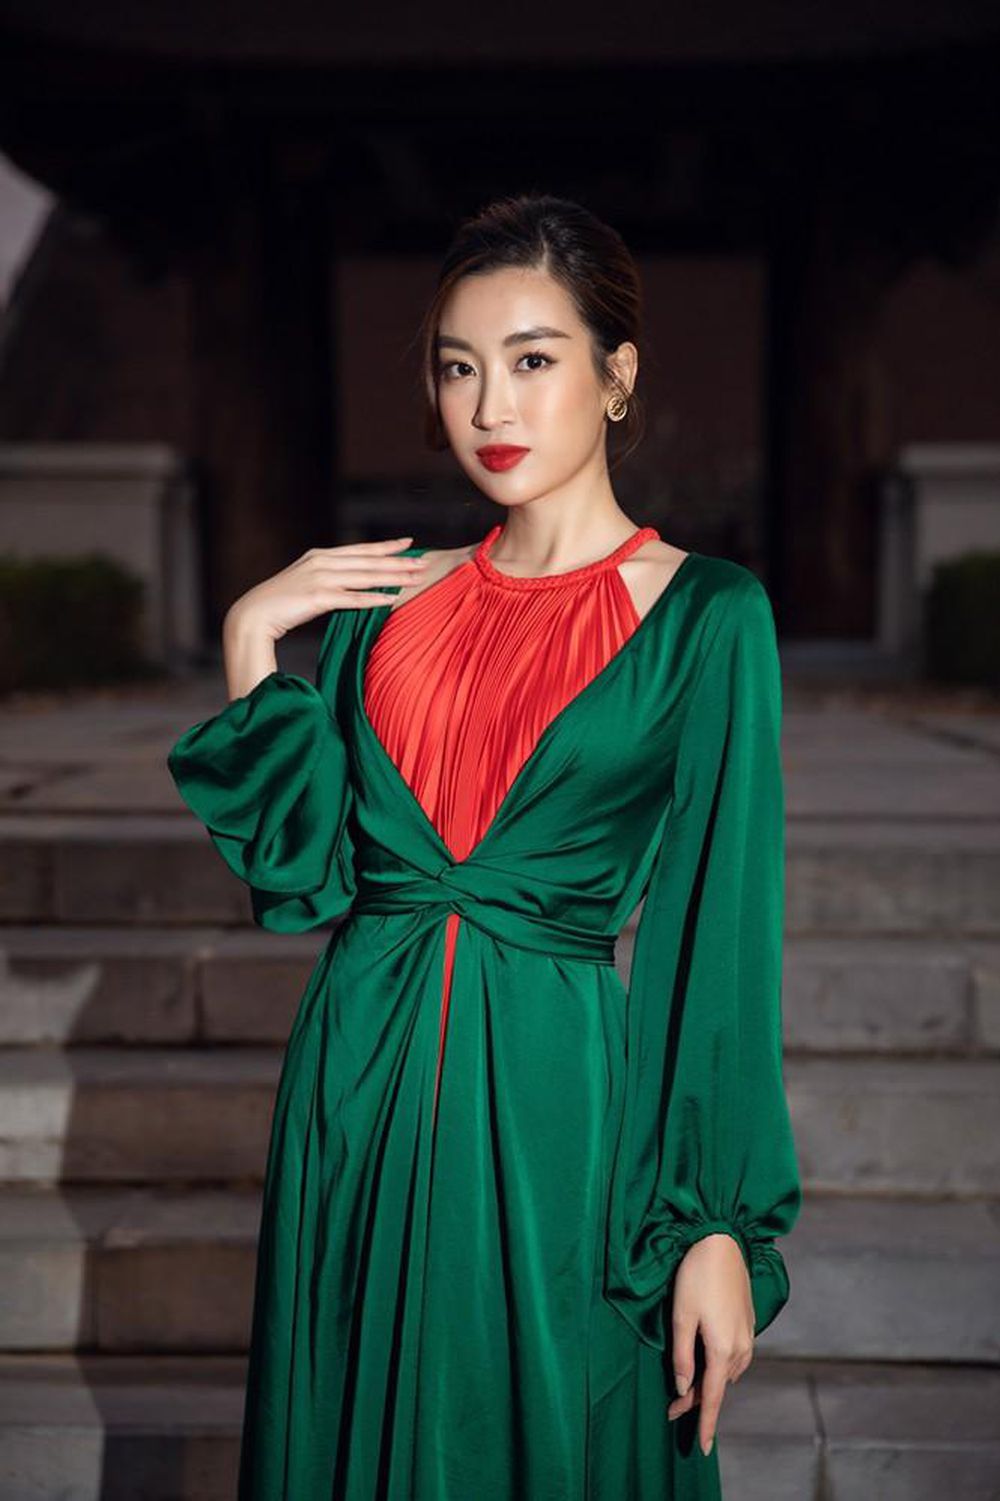 Hoa hậu Đỗ Mỹ Linh khoe vẻ đẹp kiều diễm cùng vóc dáng 'mình hạc sương mai' khi diện váy tứ thân cách điệu từ hai gam màu xanh và đỏ.